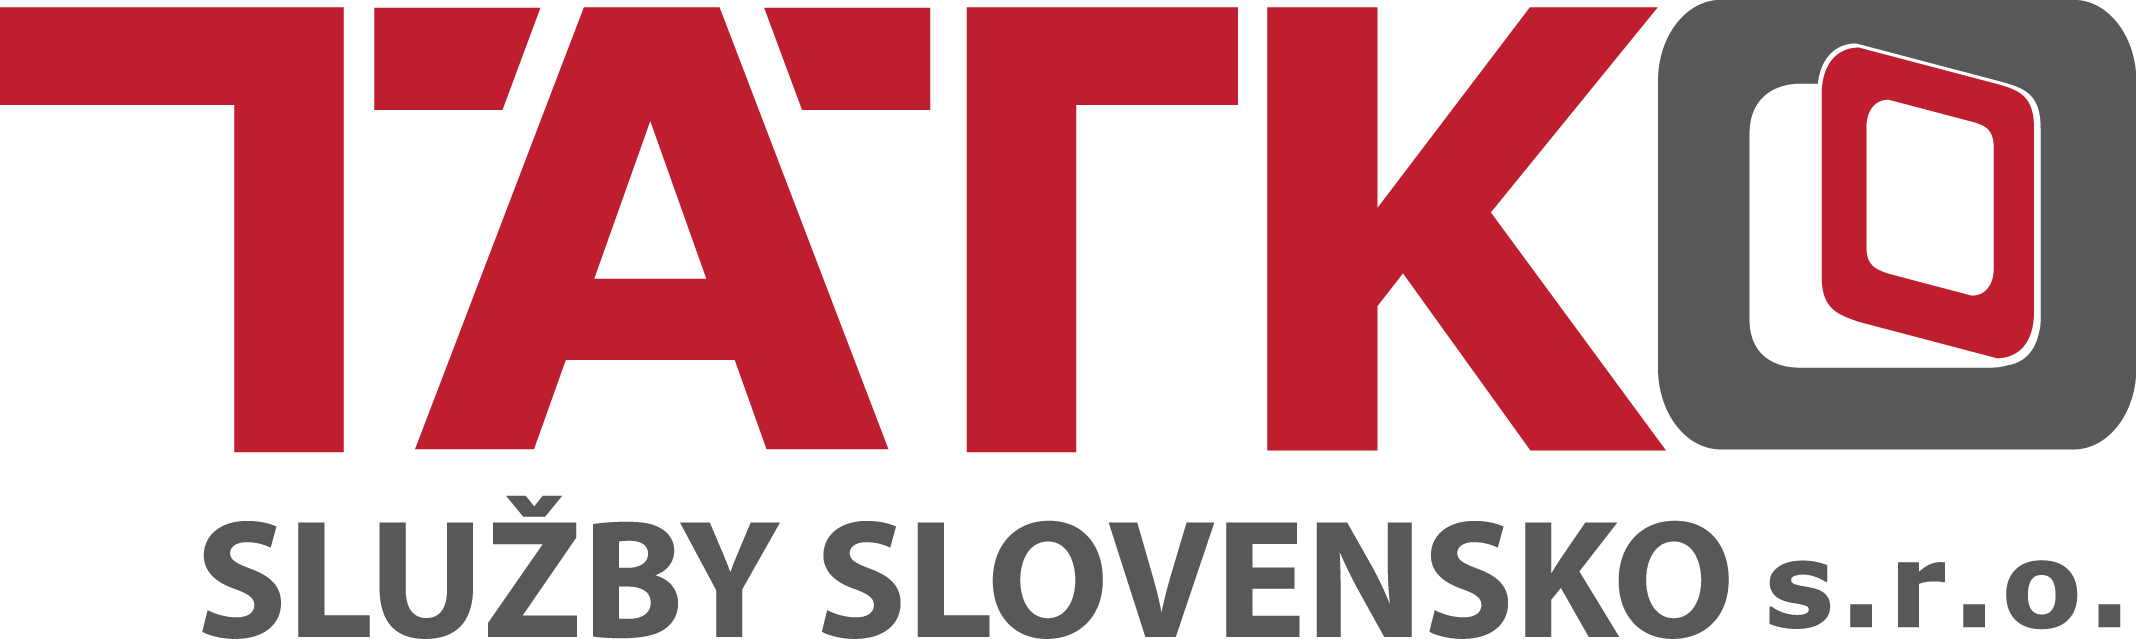 www.tatkosluzby.sk